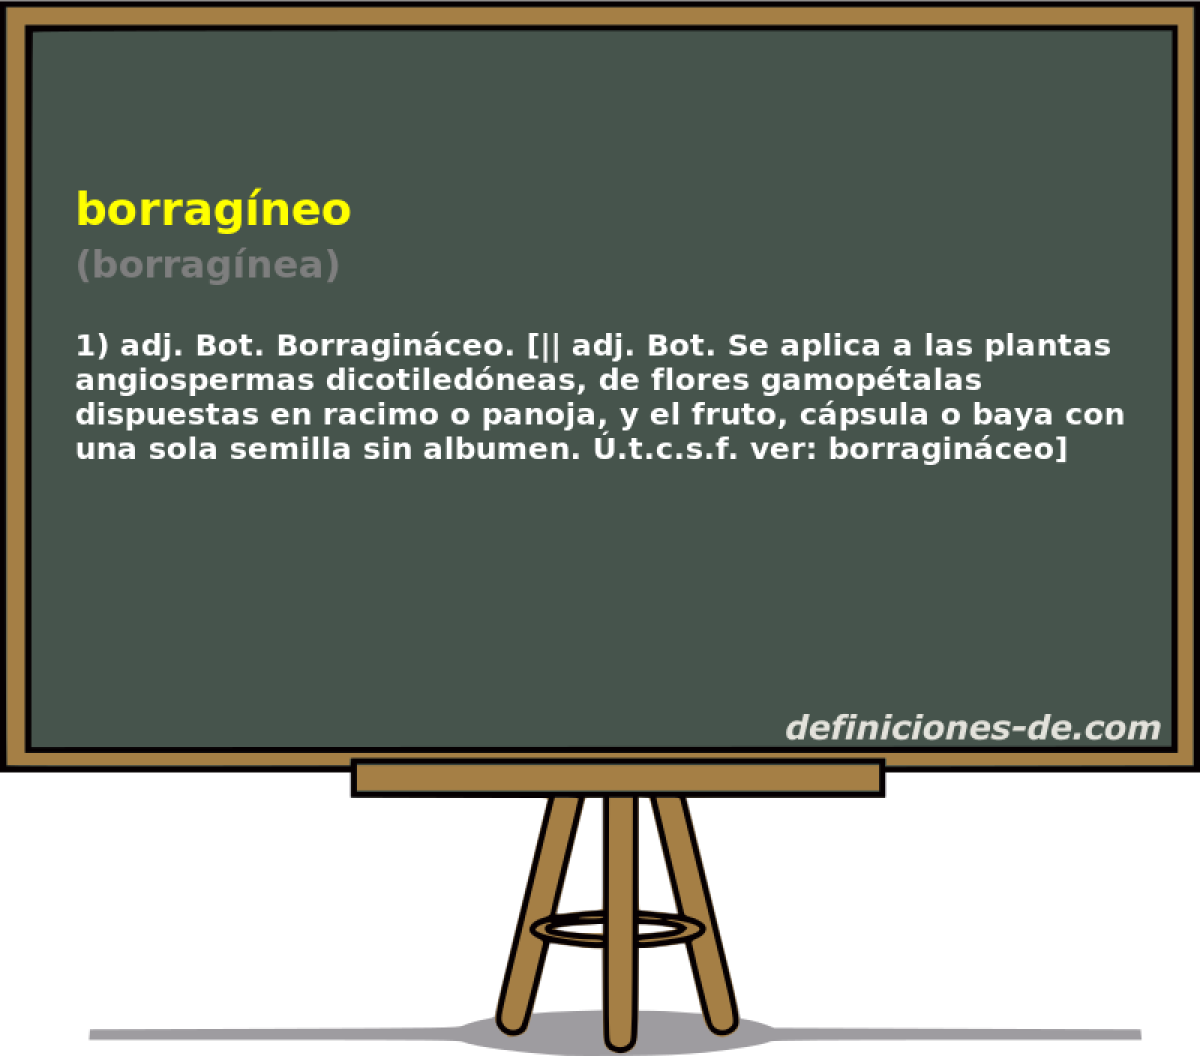 borragneo (borragnea)